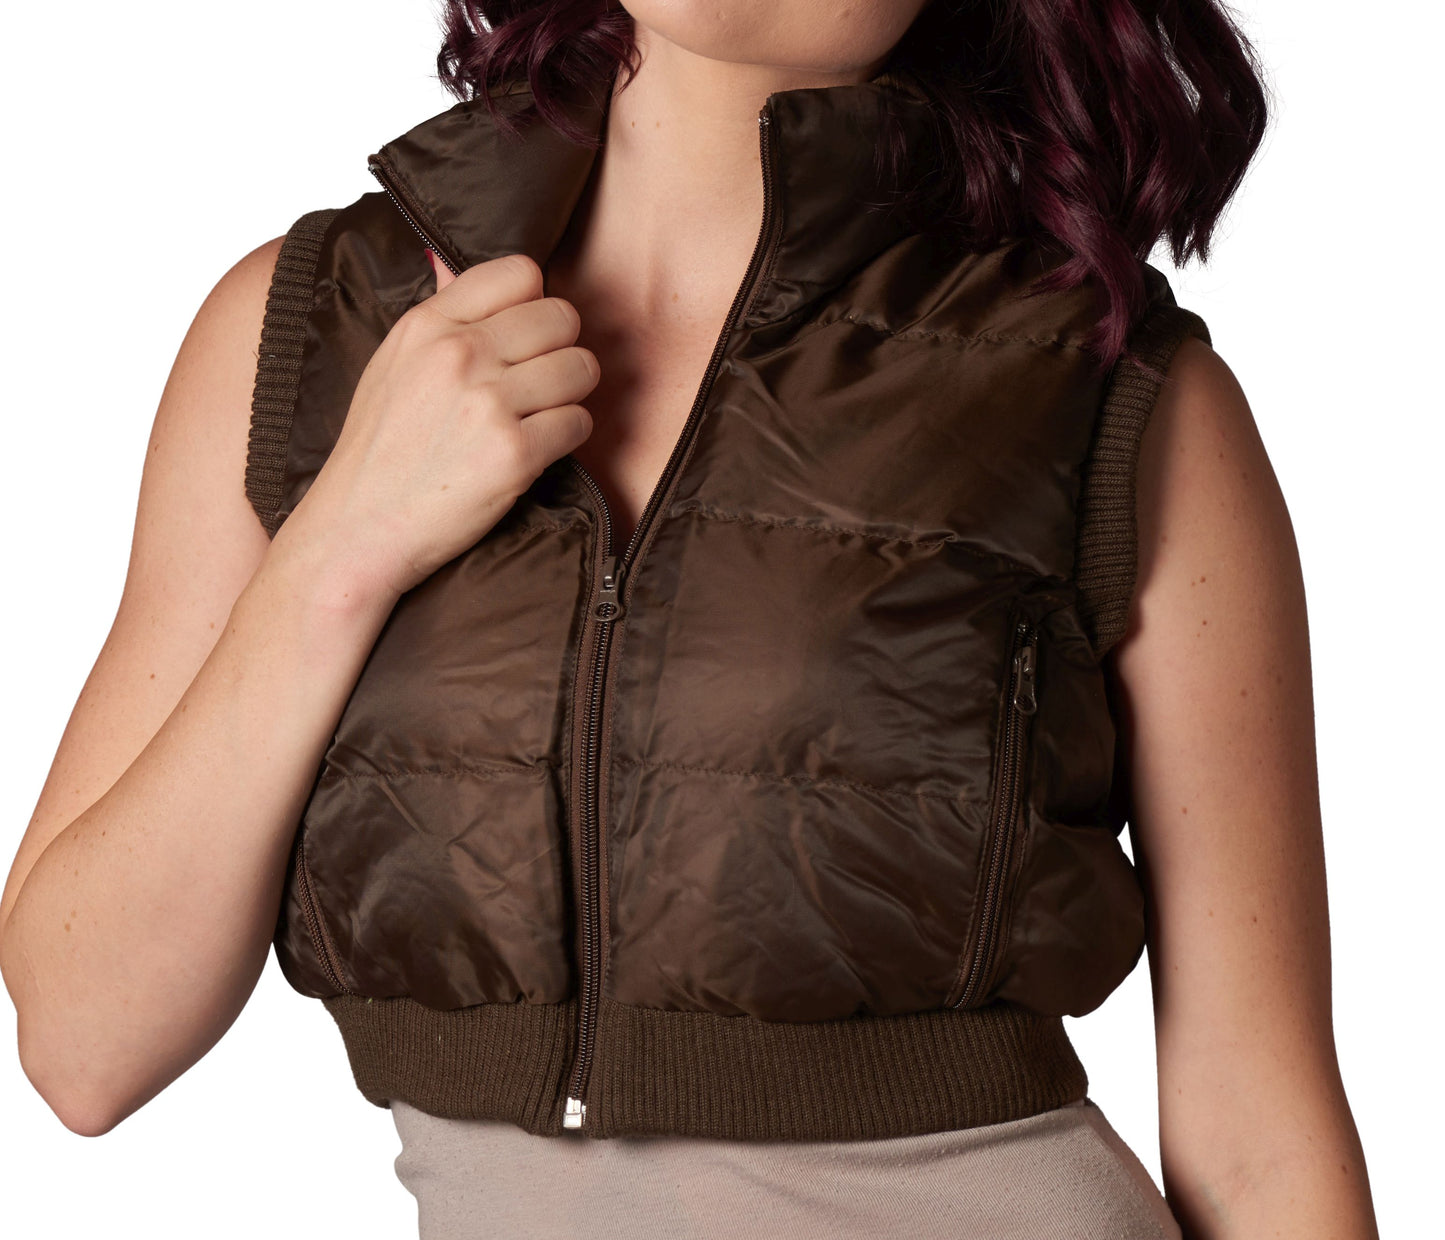 Big Apple Women's Winter Crop Vest Lightweight Sleeveless Warm Outerwear Puffer Vest Padded